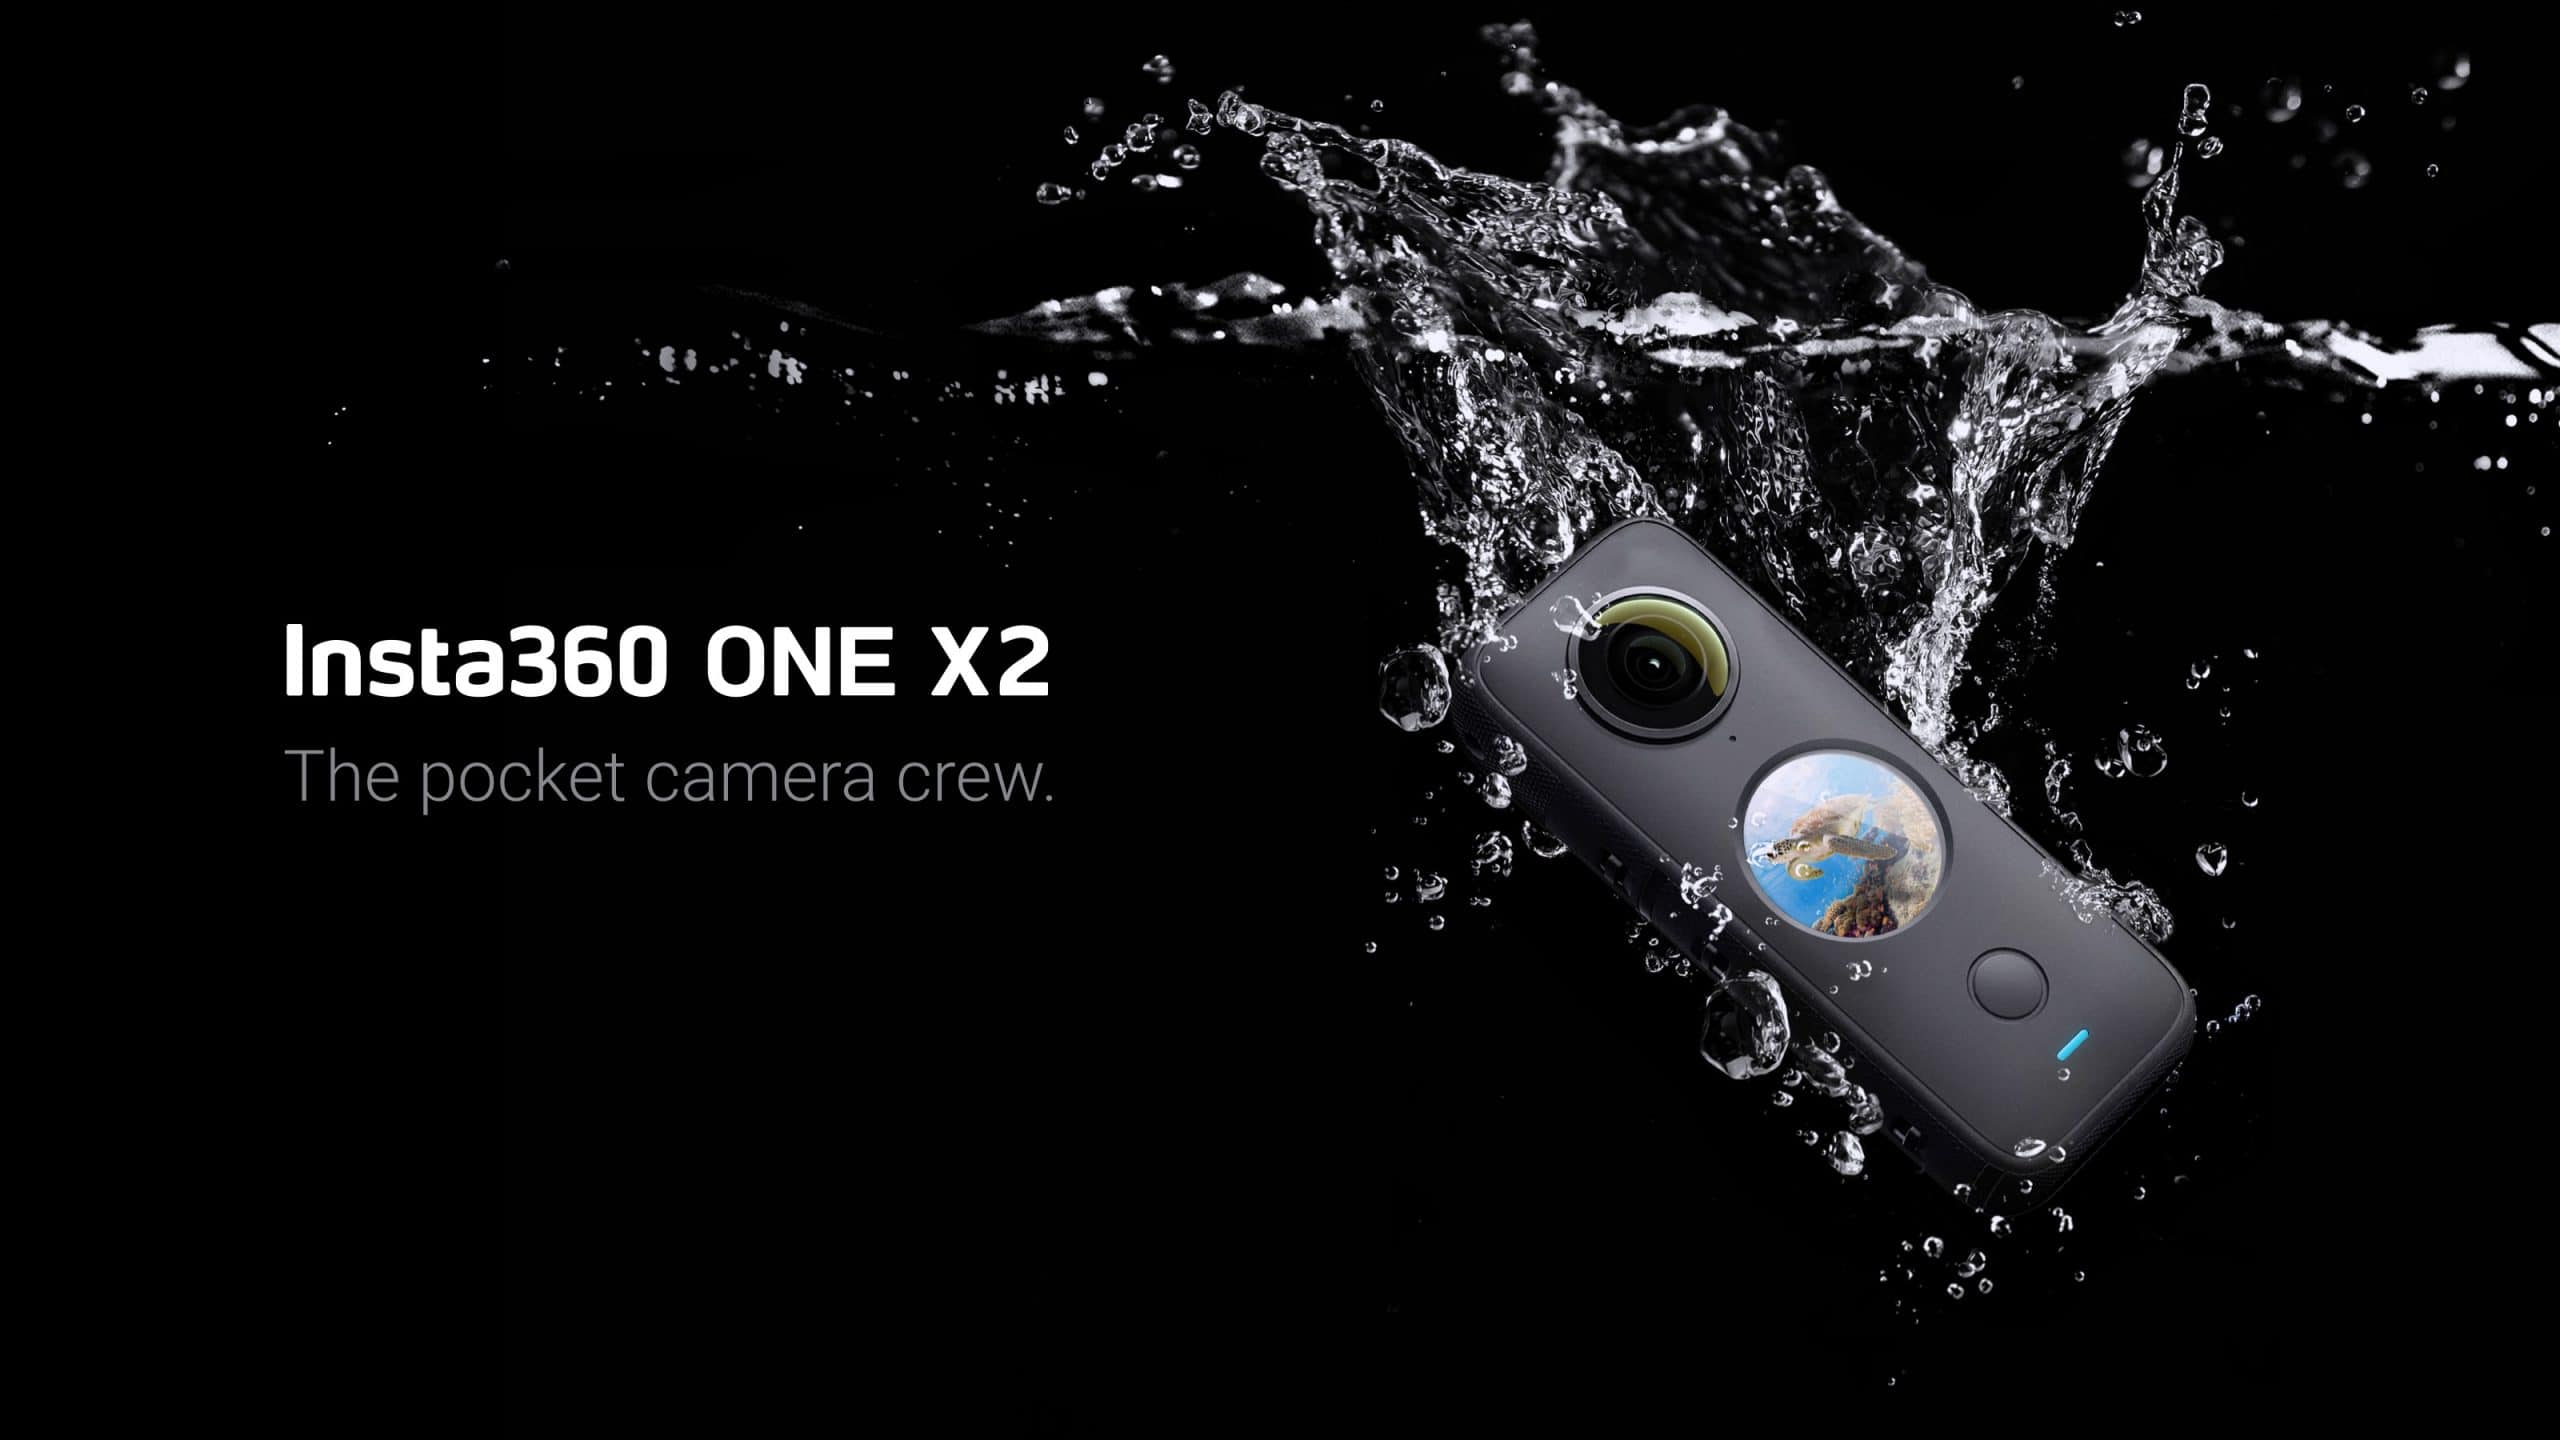 Insta360 ra mắt ONE X2, camera 360 độ nhỏ gọn quay video 5.7K và có cả chống rung hình ảnh